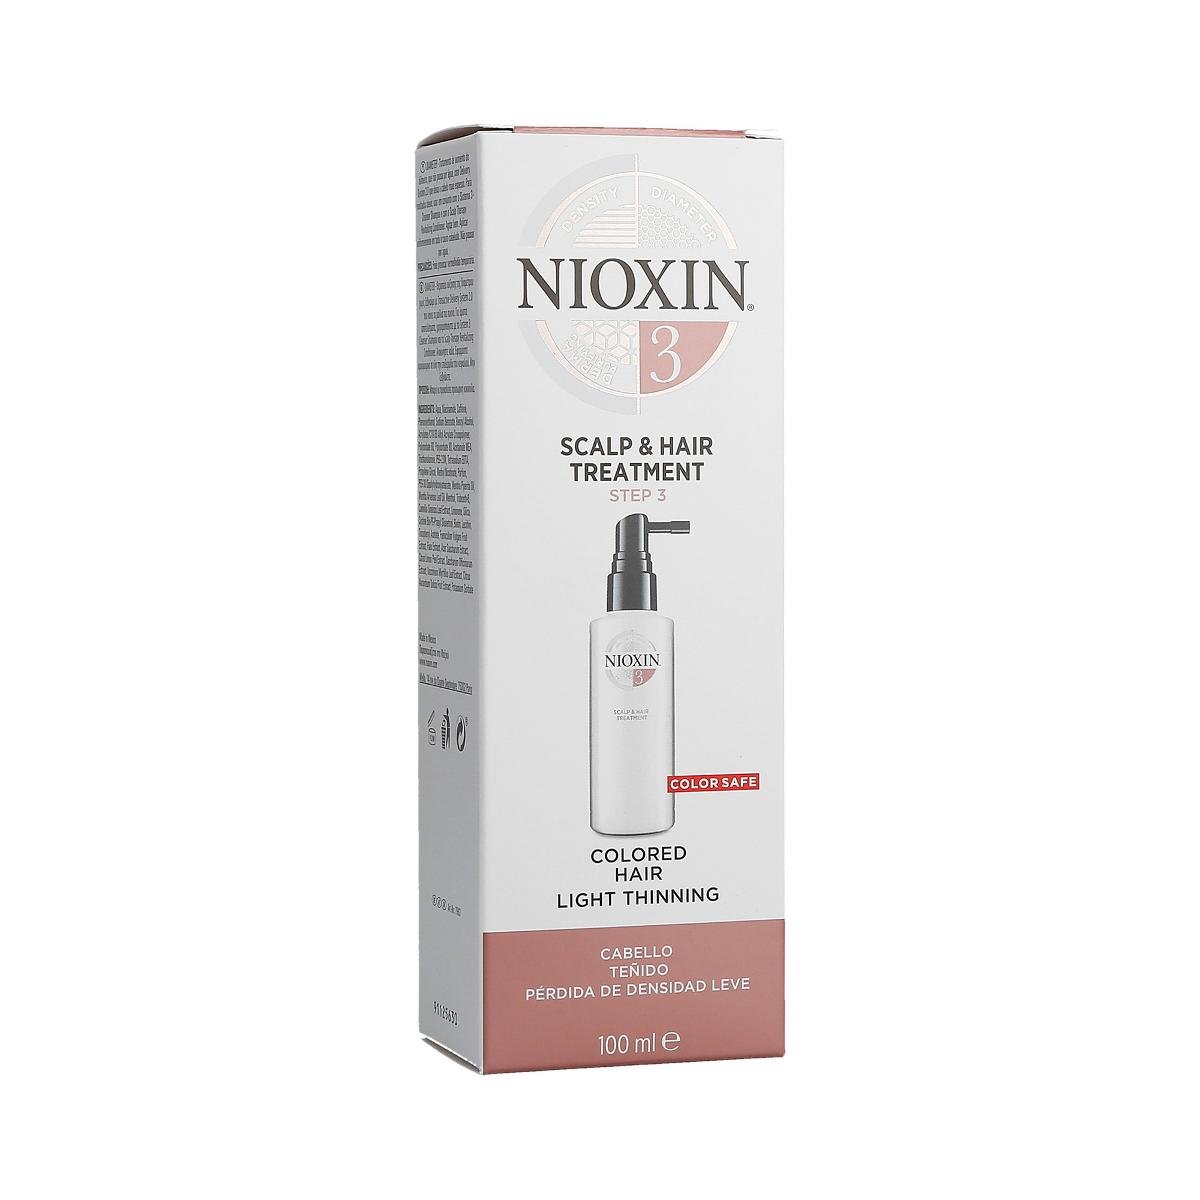 Nioxin 3D CARE SYSTEM 3 Scalp Treatment Kuracja zagęszczająca włosy 100ml 0000063524